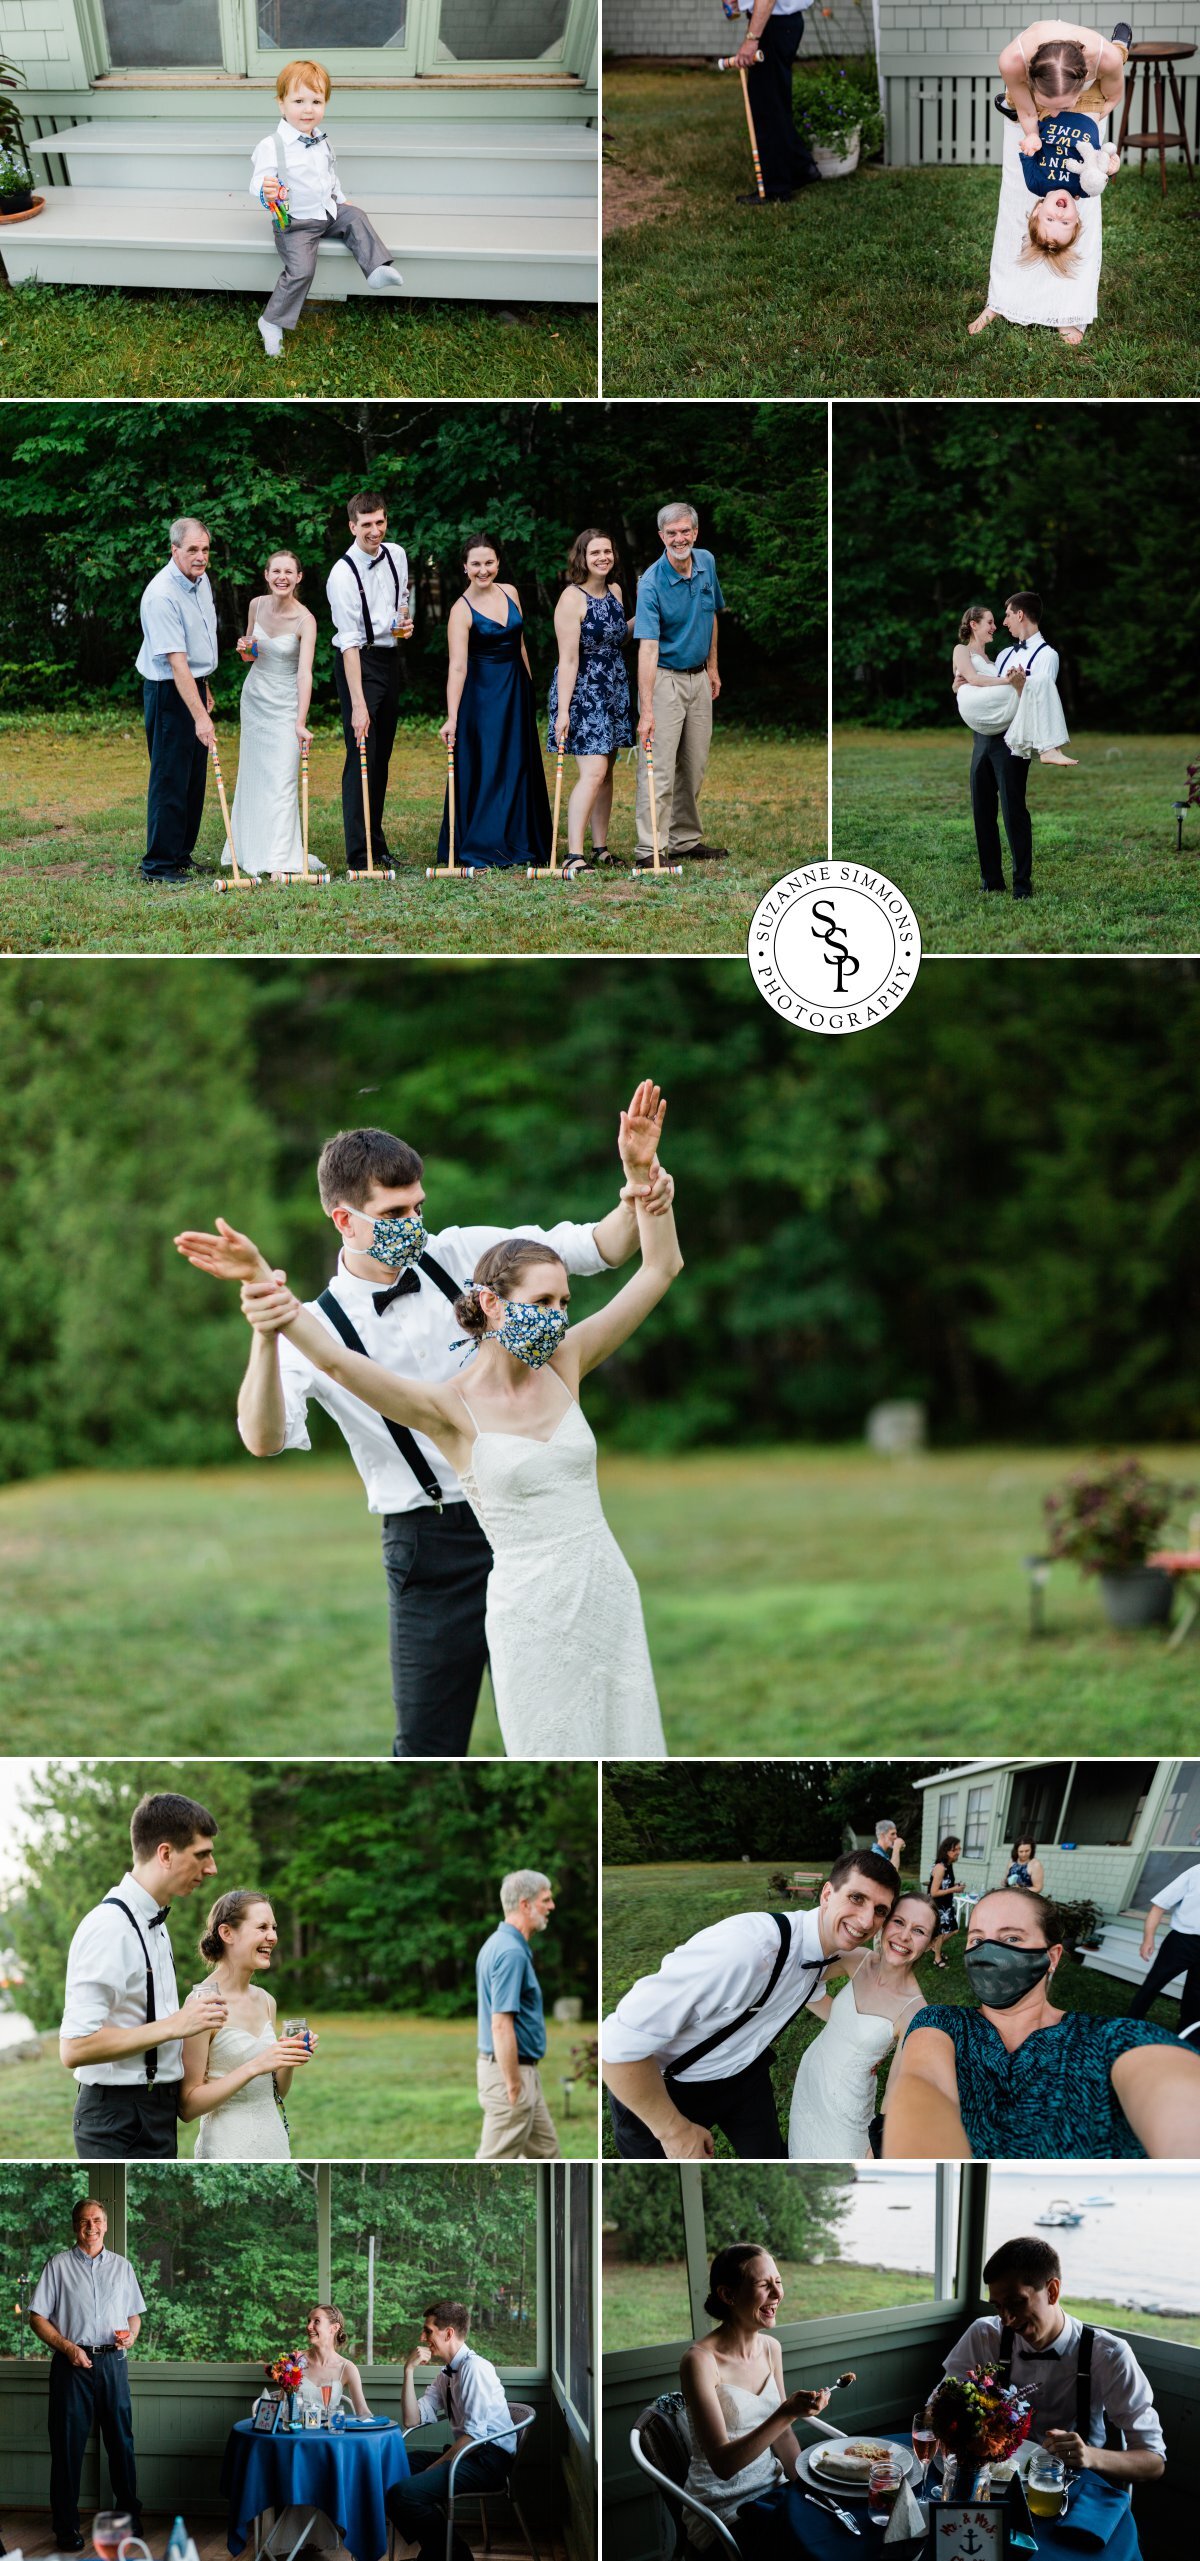 Wedding croquet game in Standish, Maine